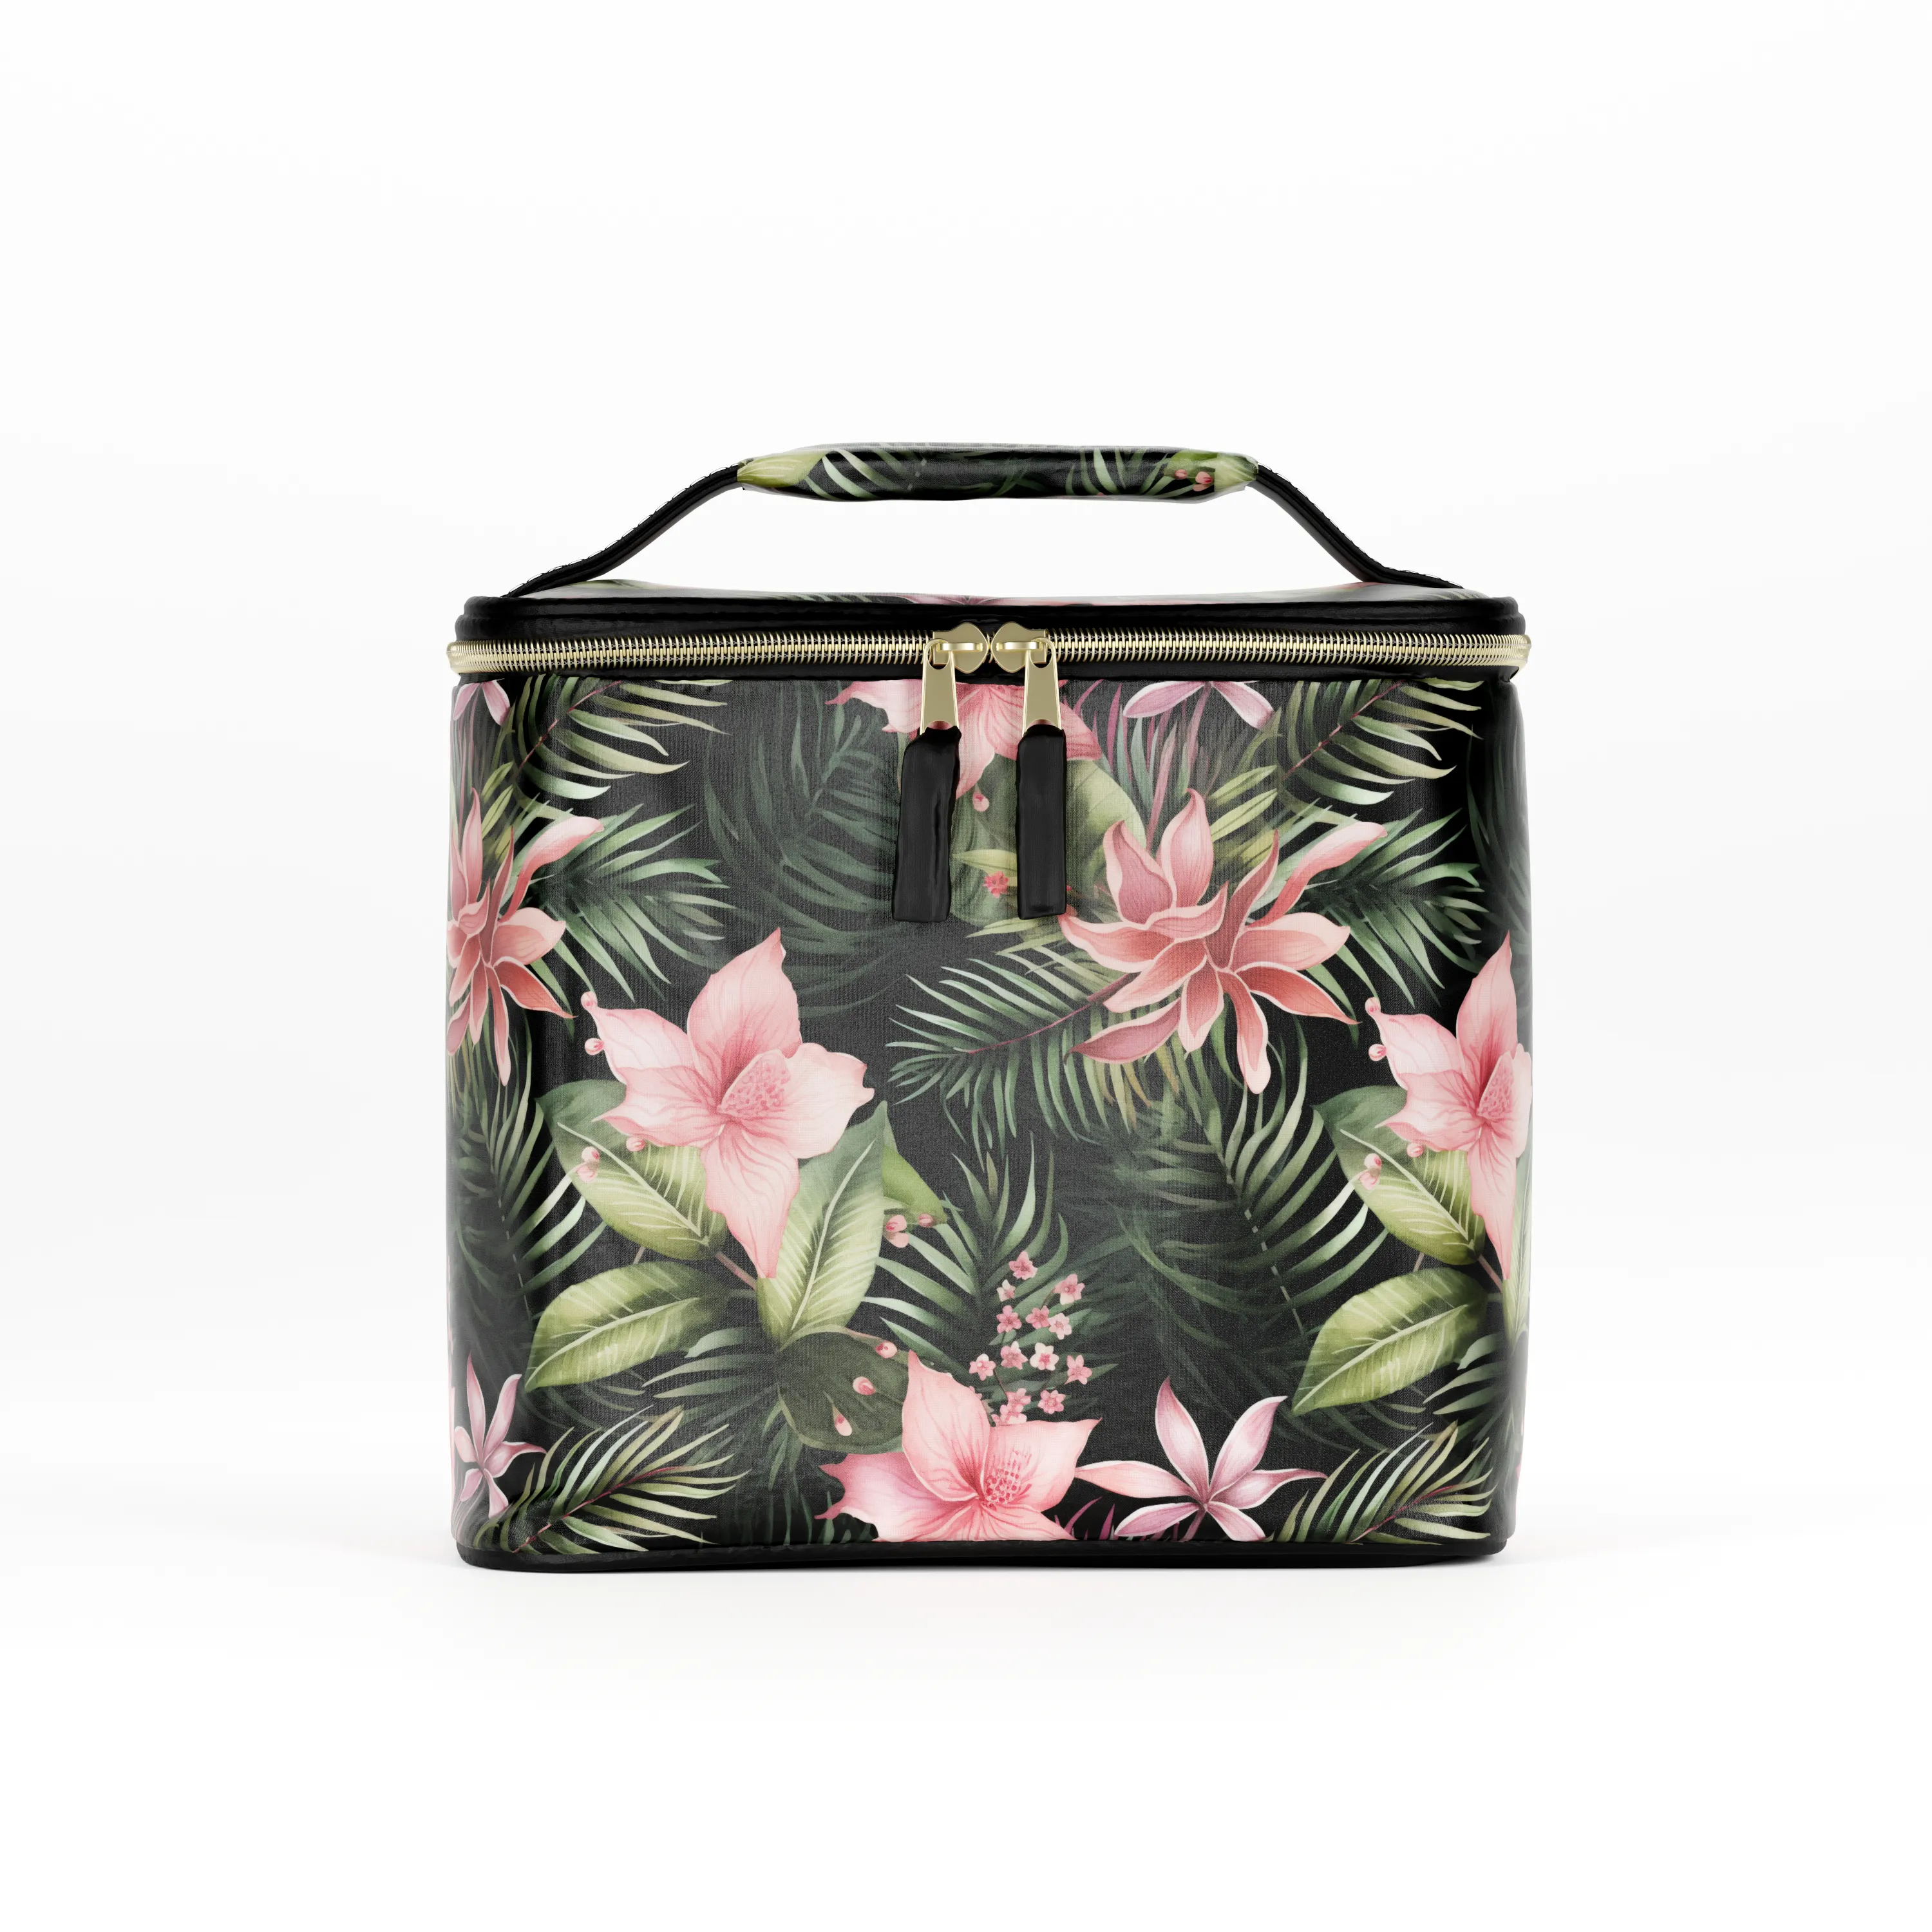 Лидер продаж, сумка-холодильник с тропическими листьями